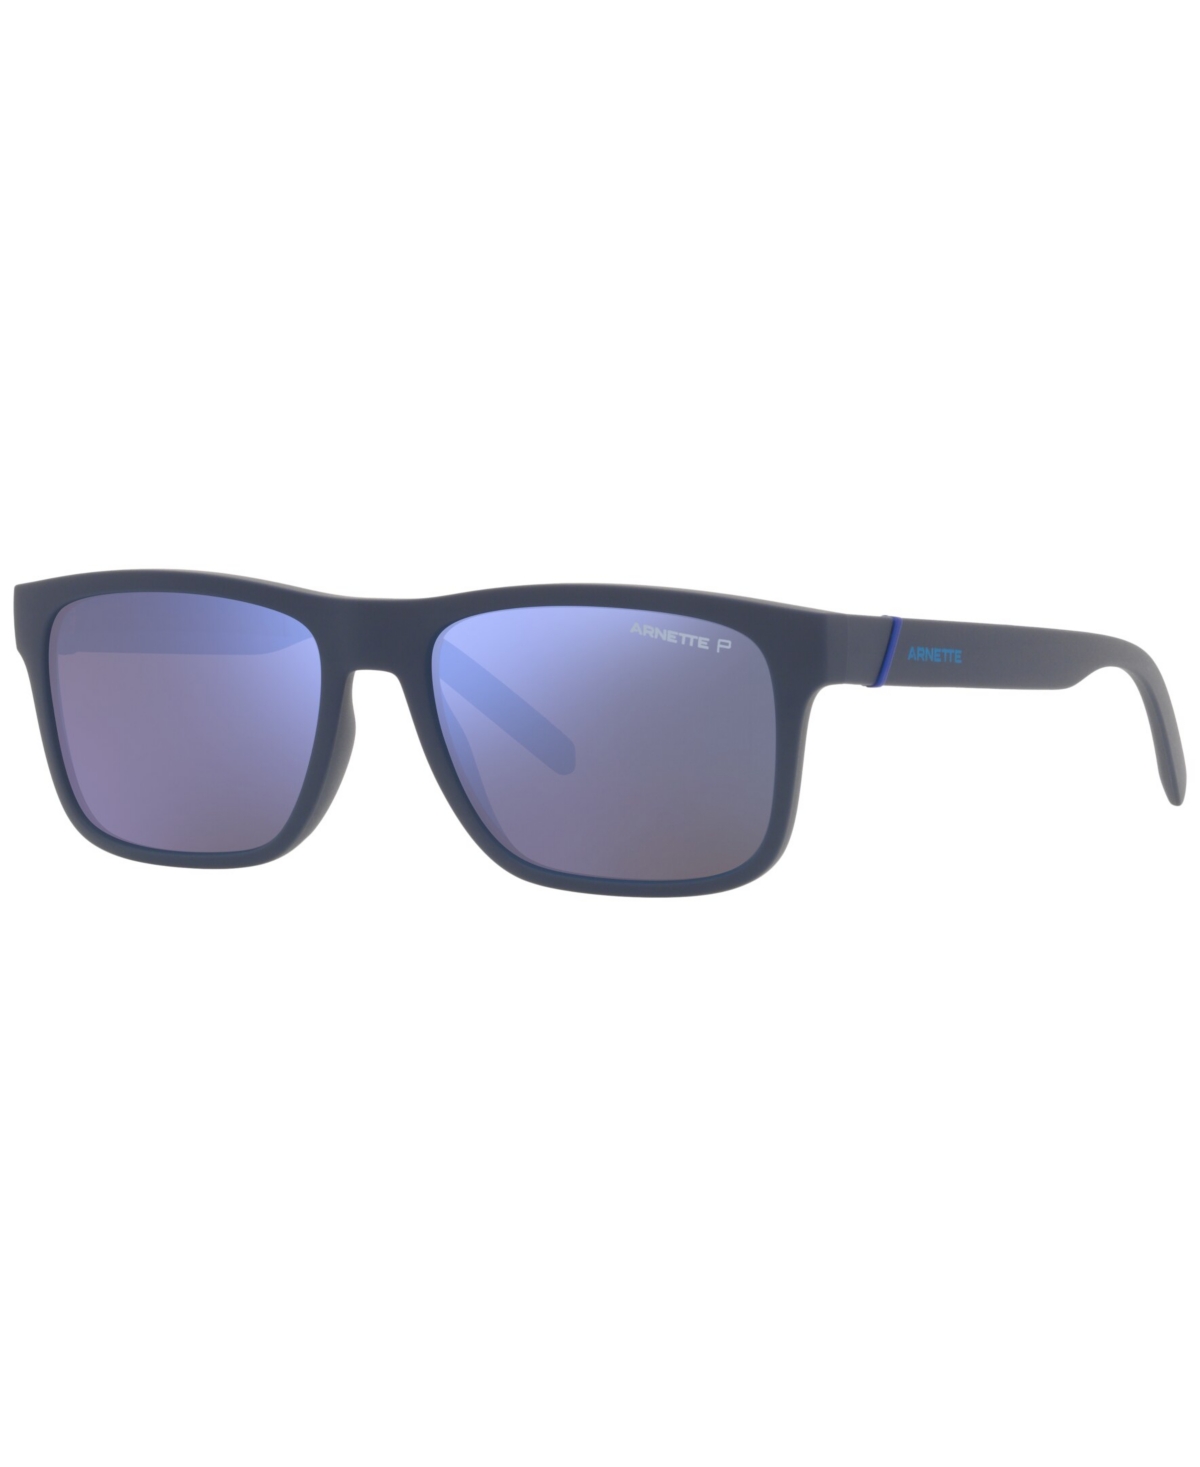 Arnette Unisex Polarized Sunglasses, An4298 Bandra 55 In Matte Navy Blue